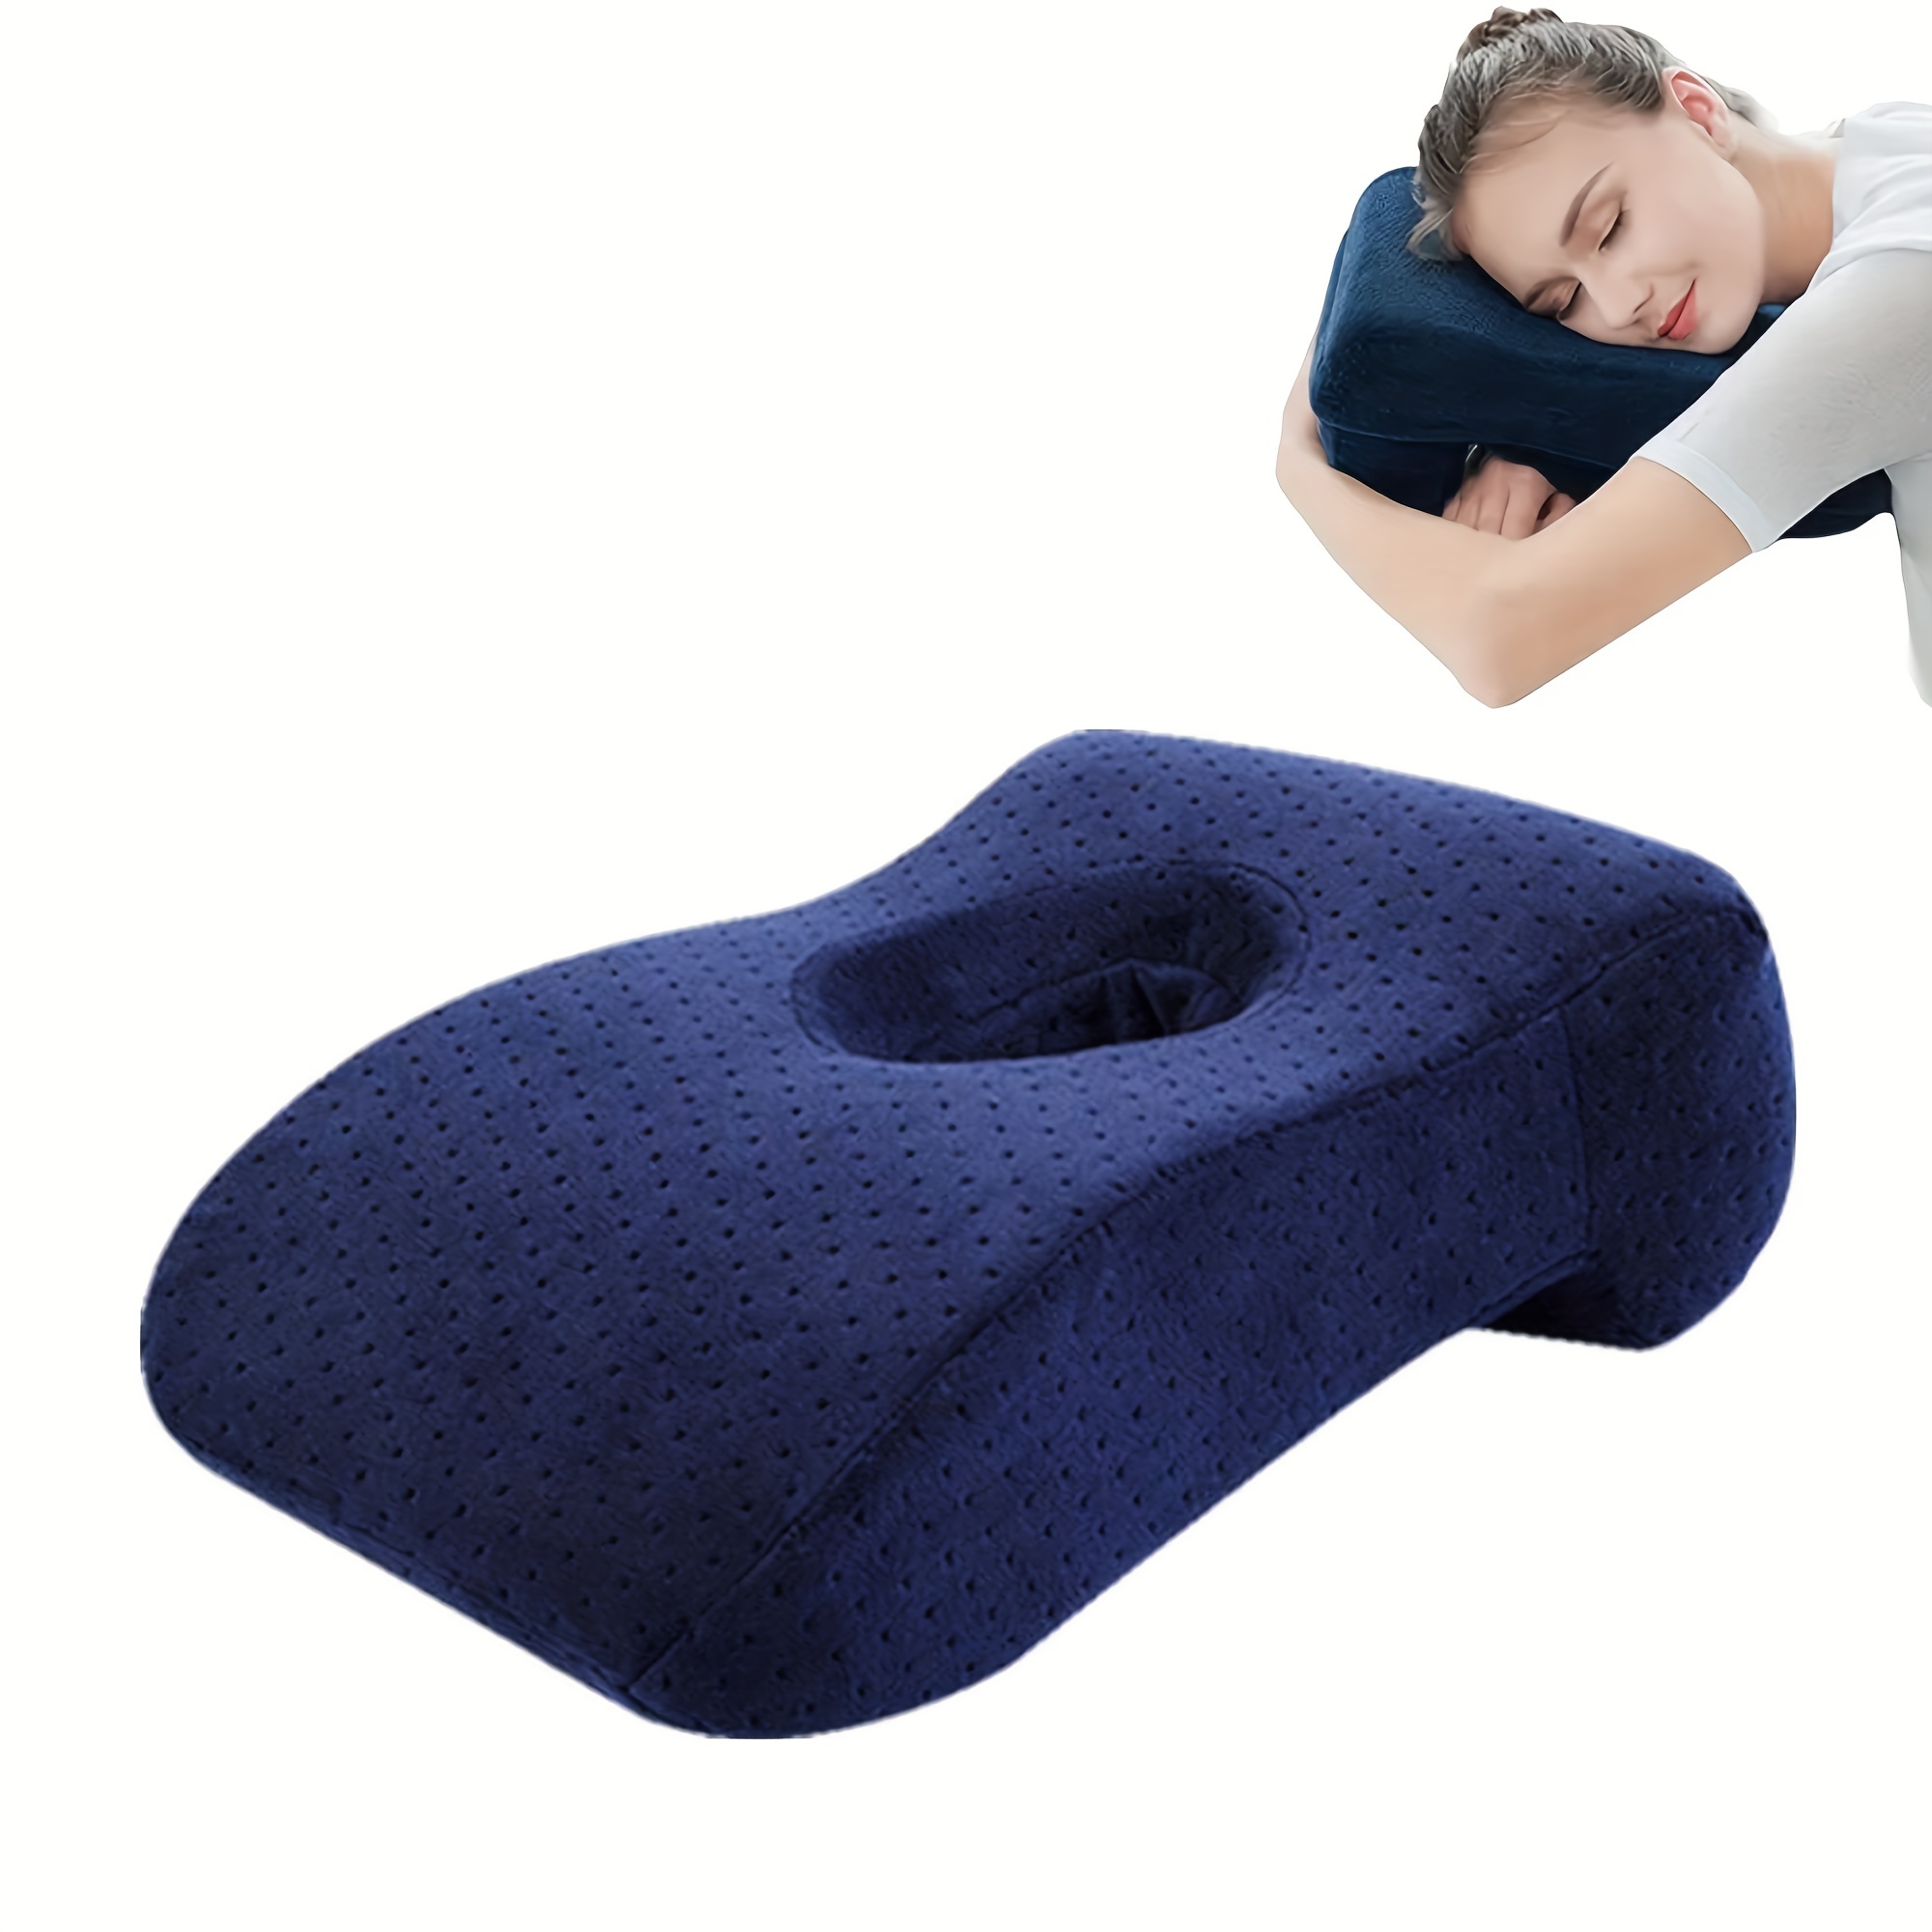 Campfire - Memory Foam Car Neck Support Pillow - Medium Firm – The